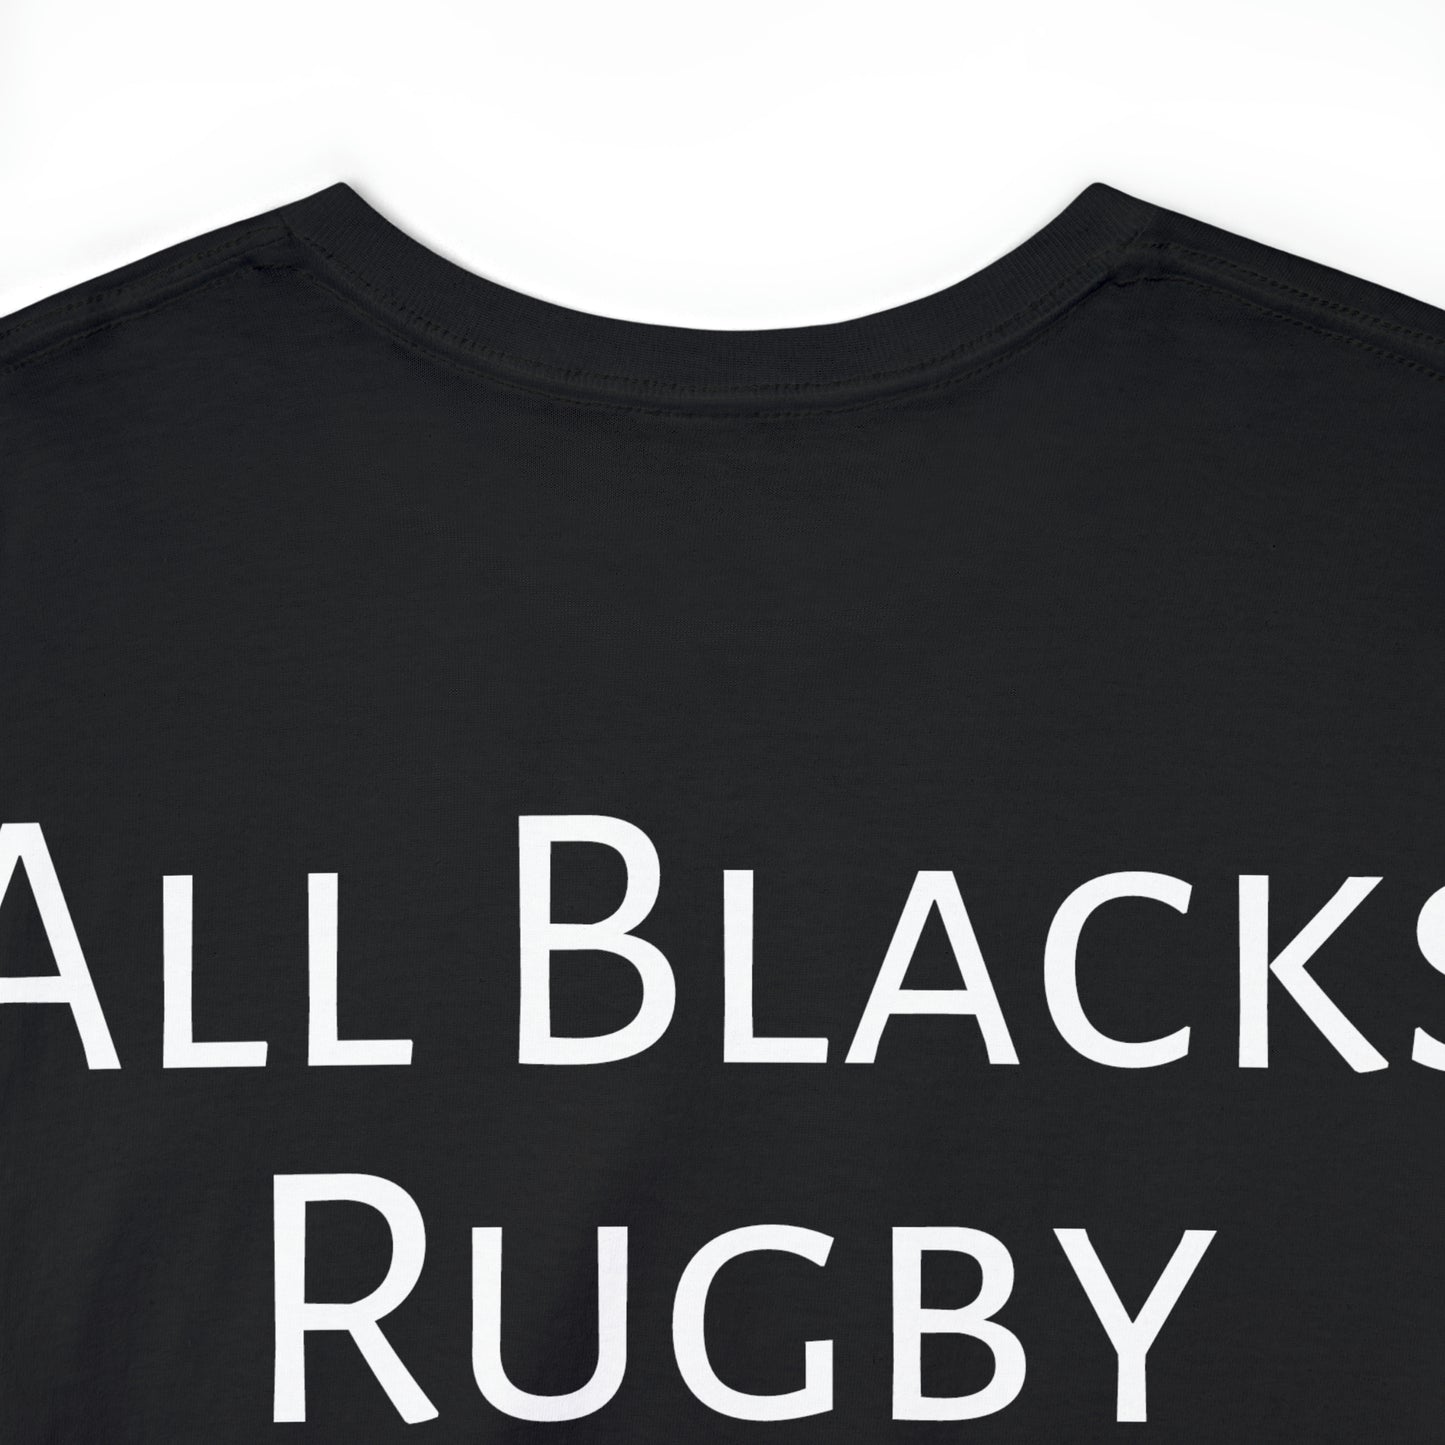 All Blacks lifting World Cup - black shirt